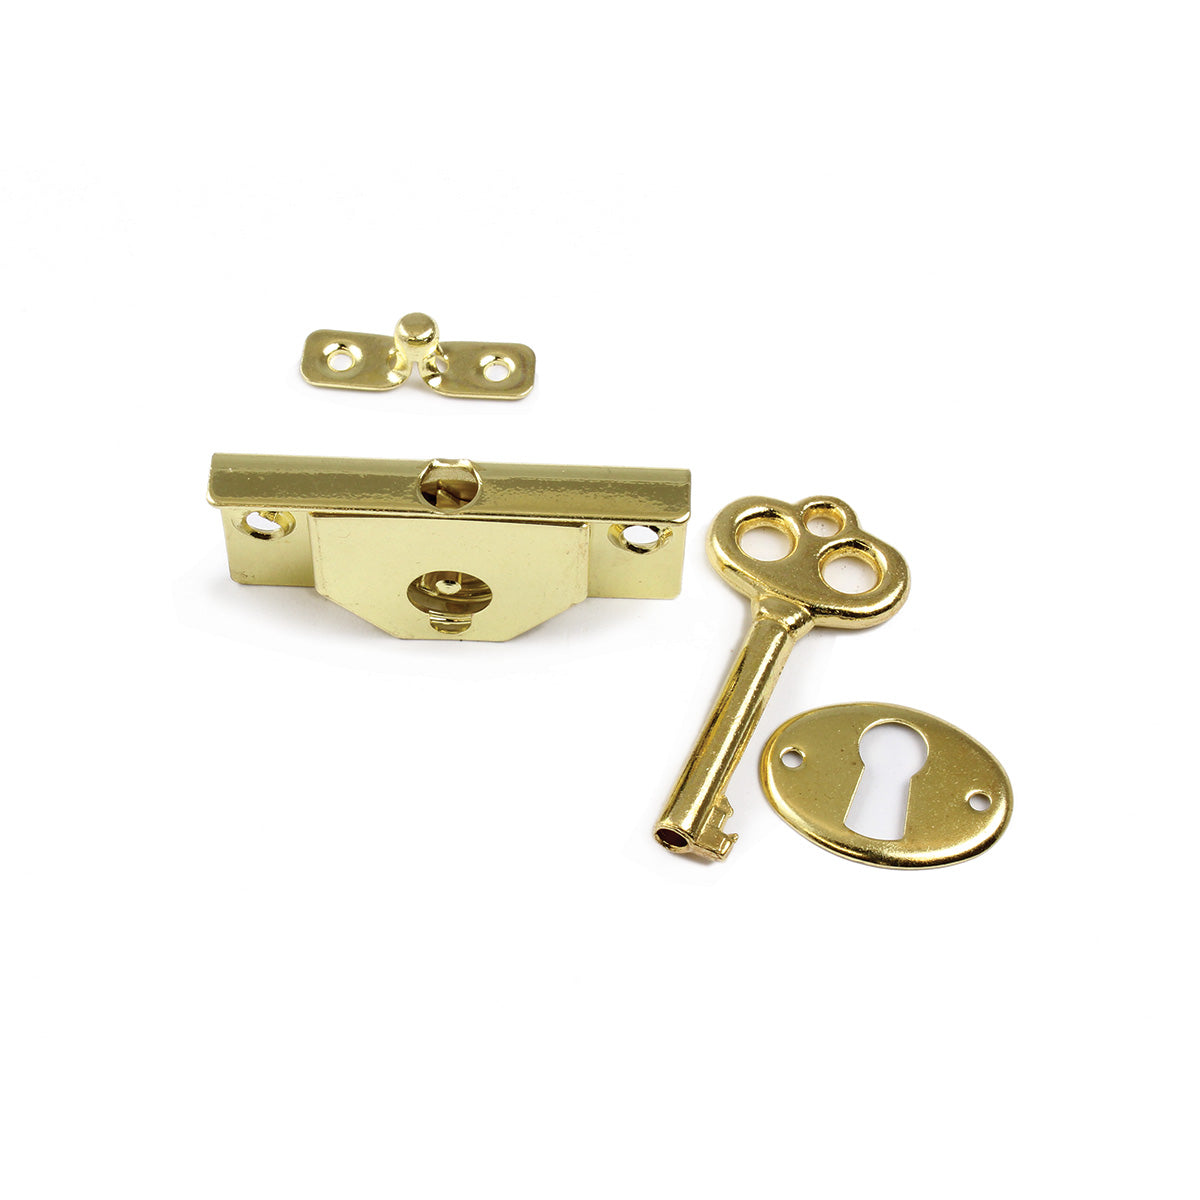 LK-25 Jewelry Box Lock